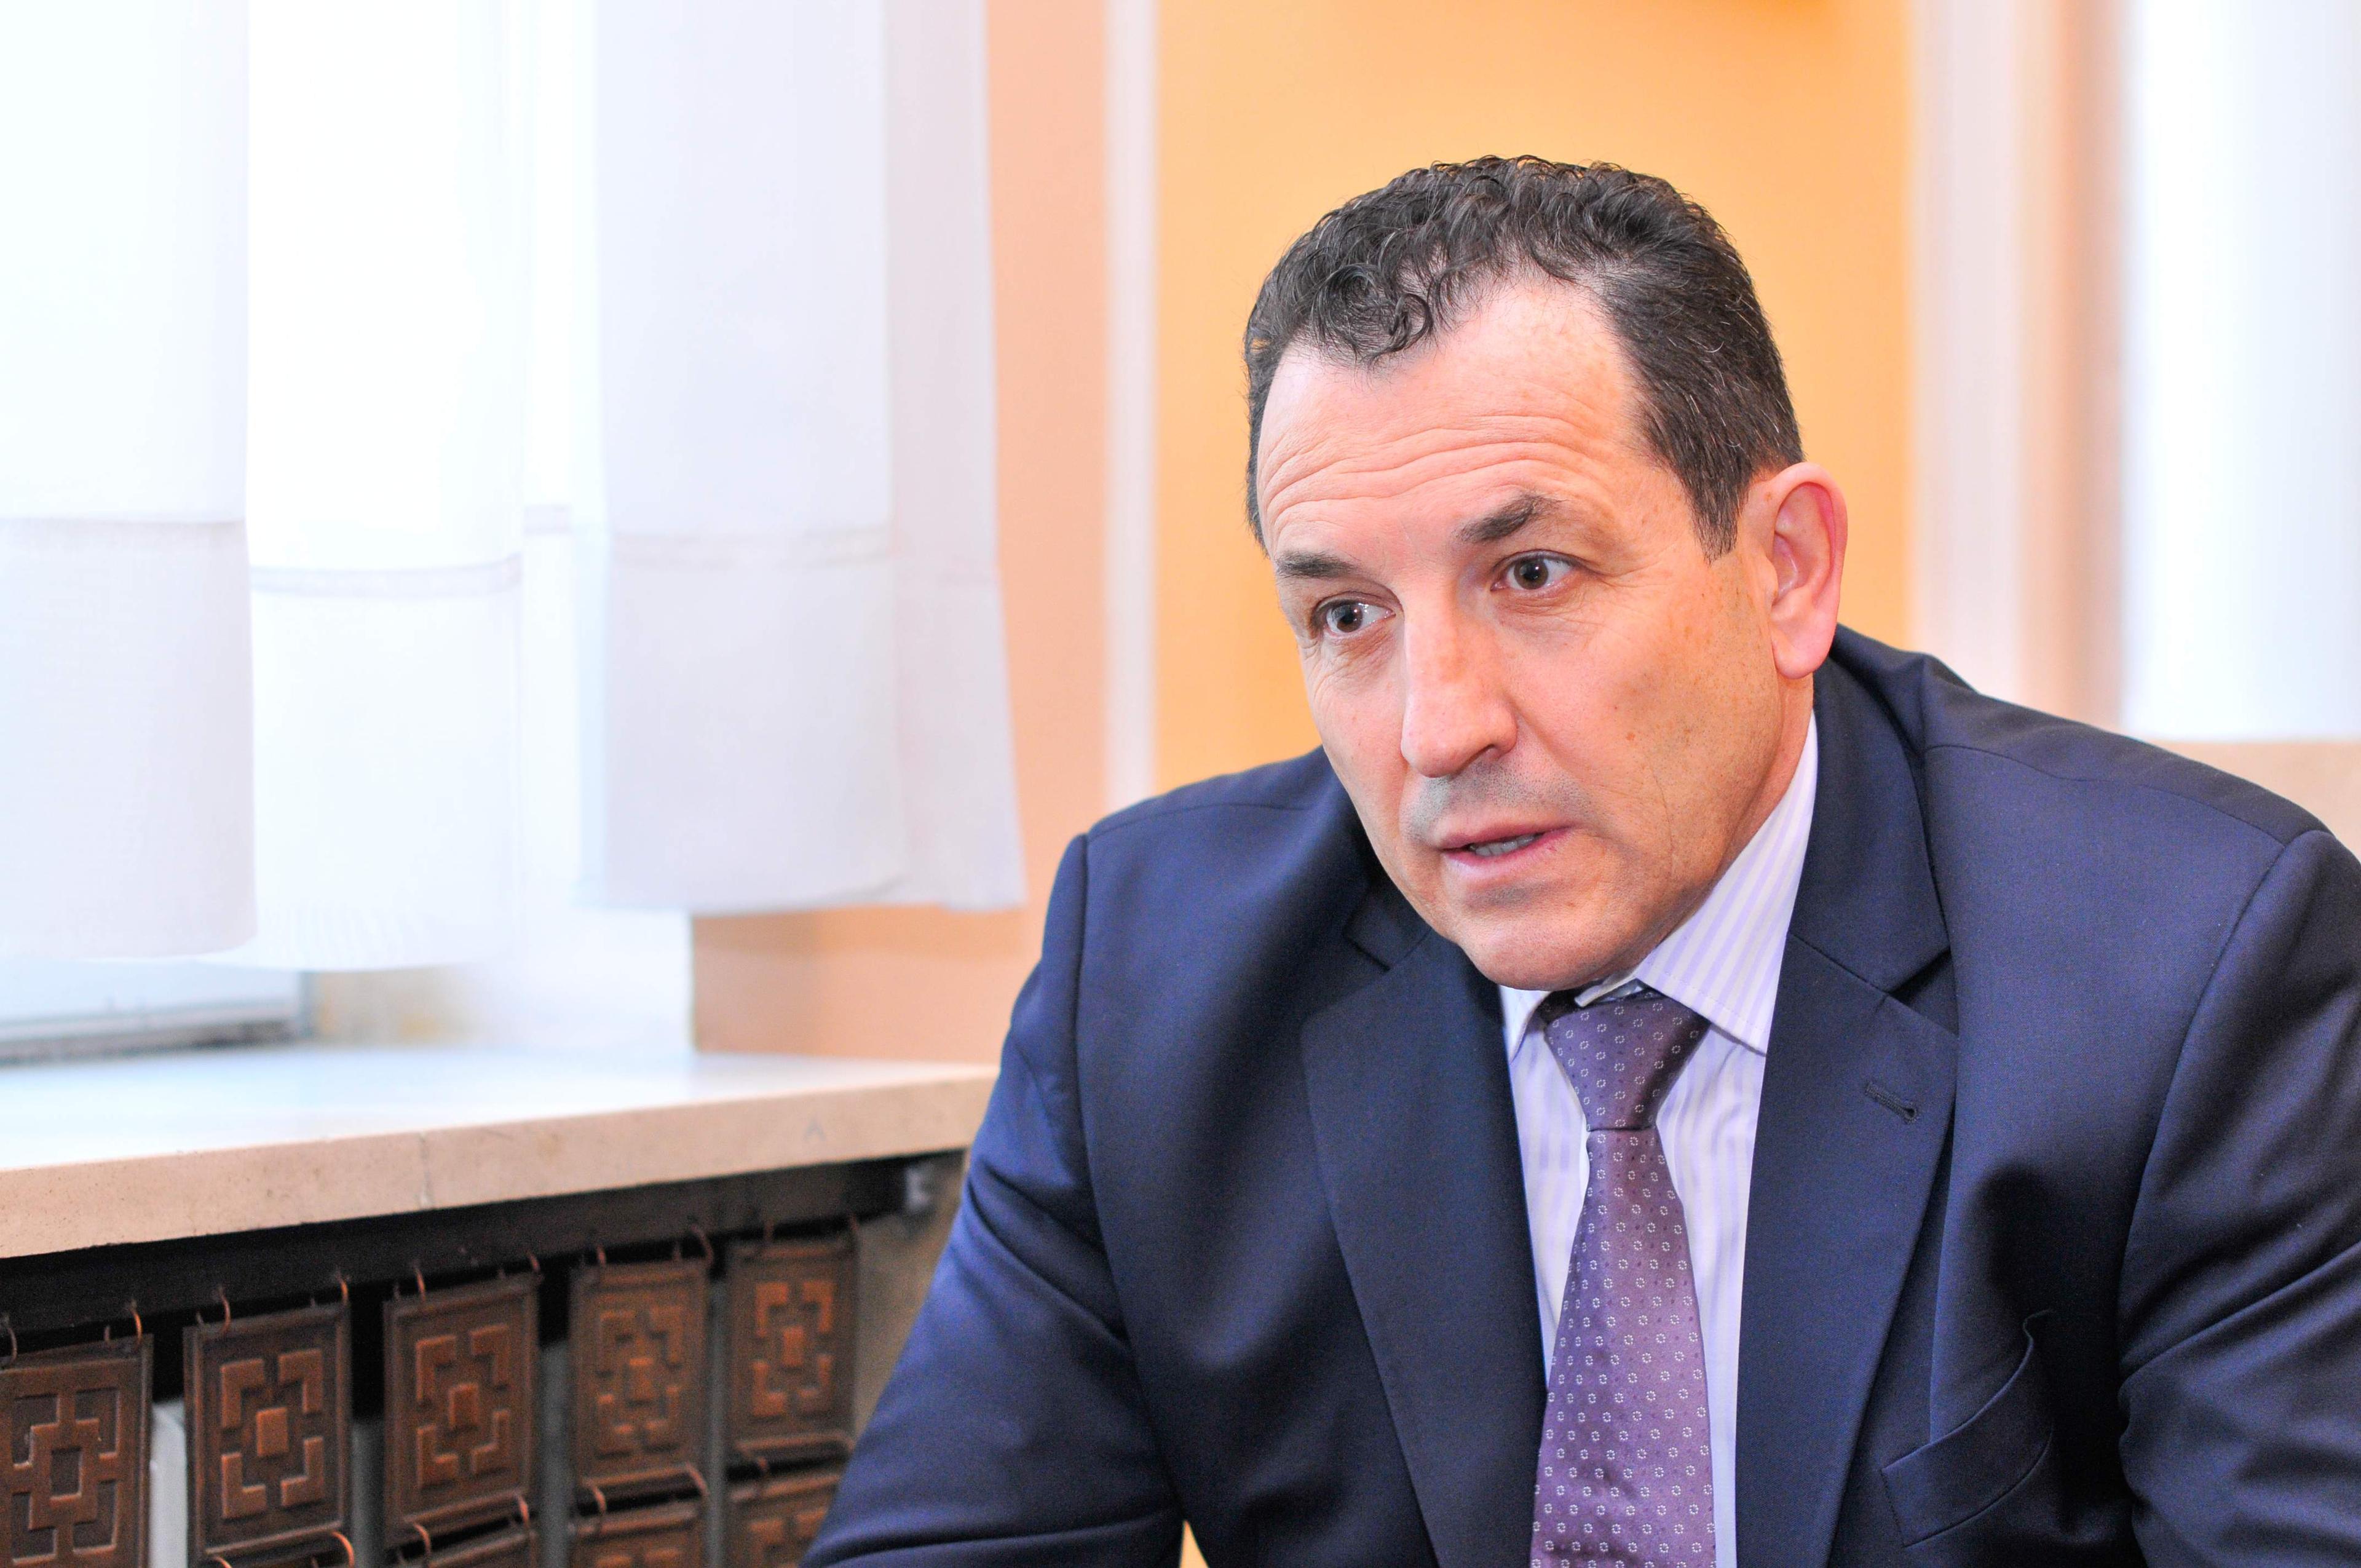 Tegeltija dostavio odluku o imenovanju Cikotića za ministra